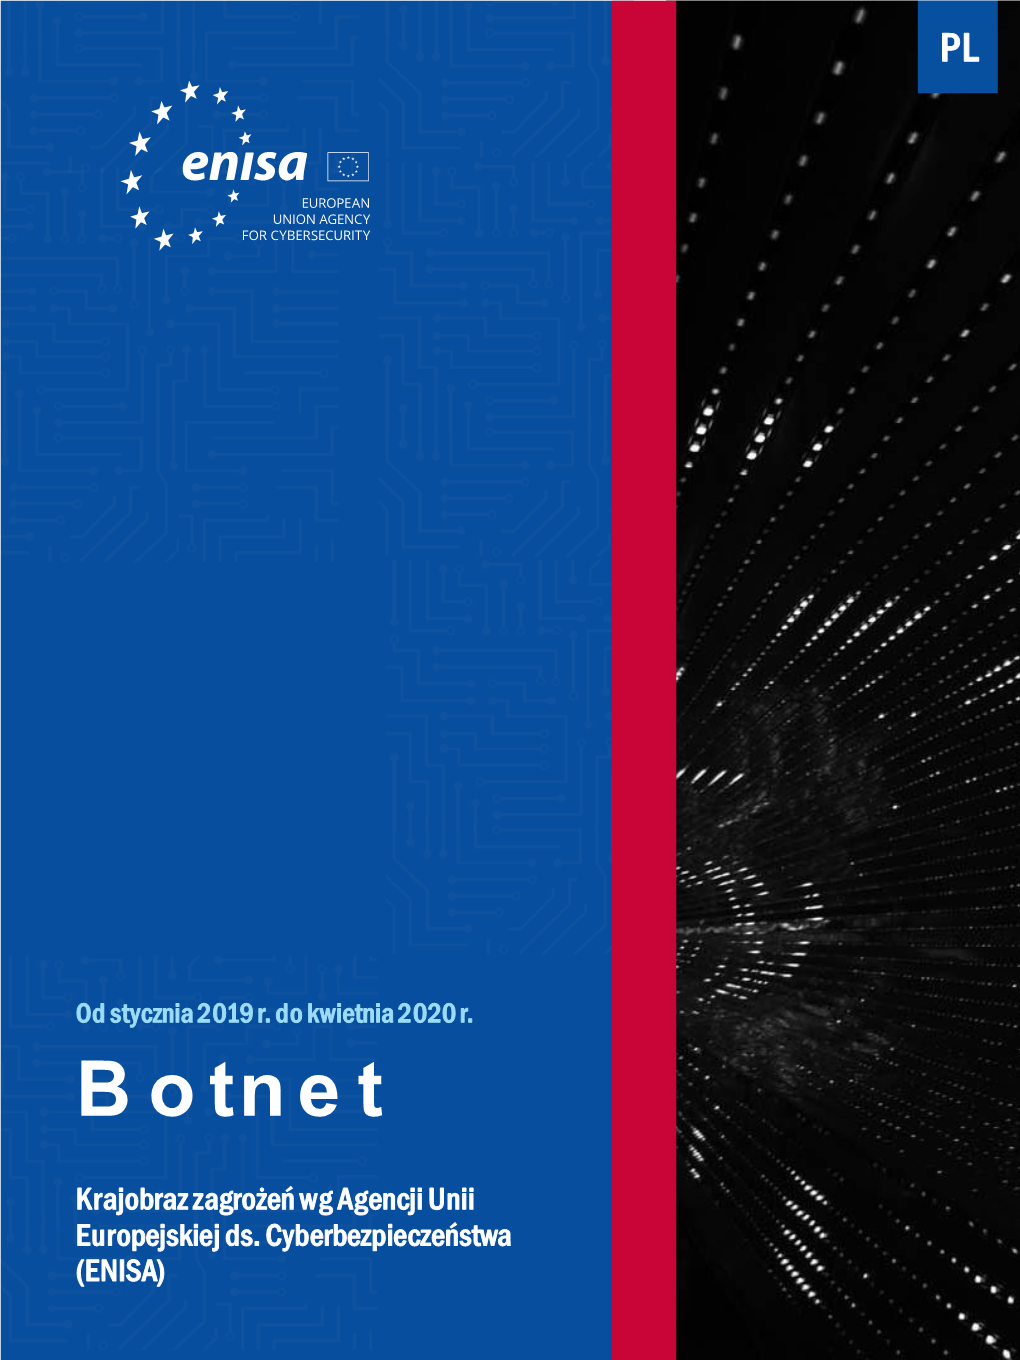 Botnet to Sieć Połączonych Urządzeń Zarażonych Złośliwym Oprogramowaniem – Botami